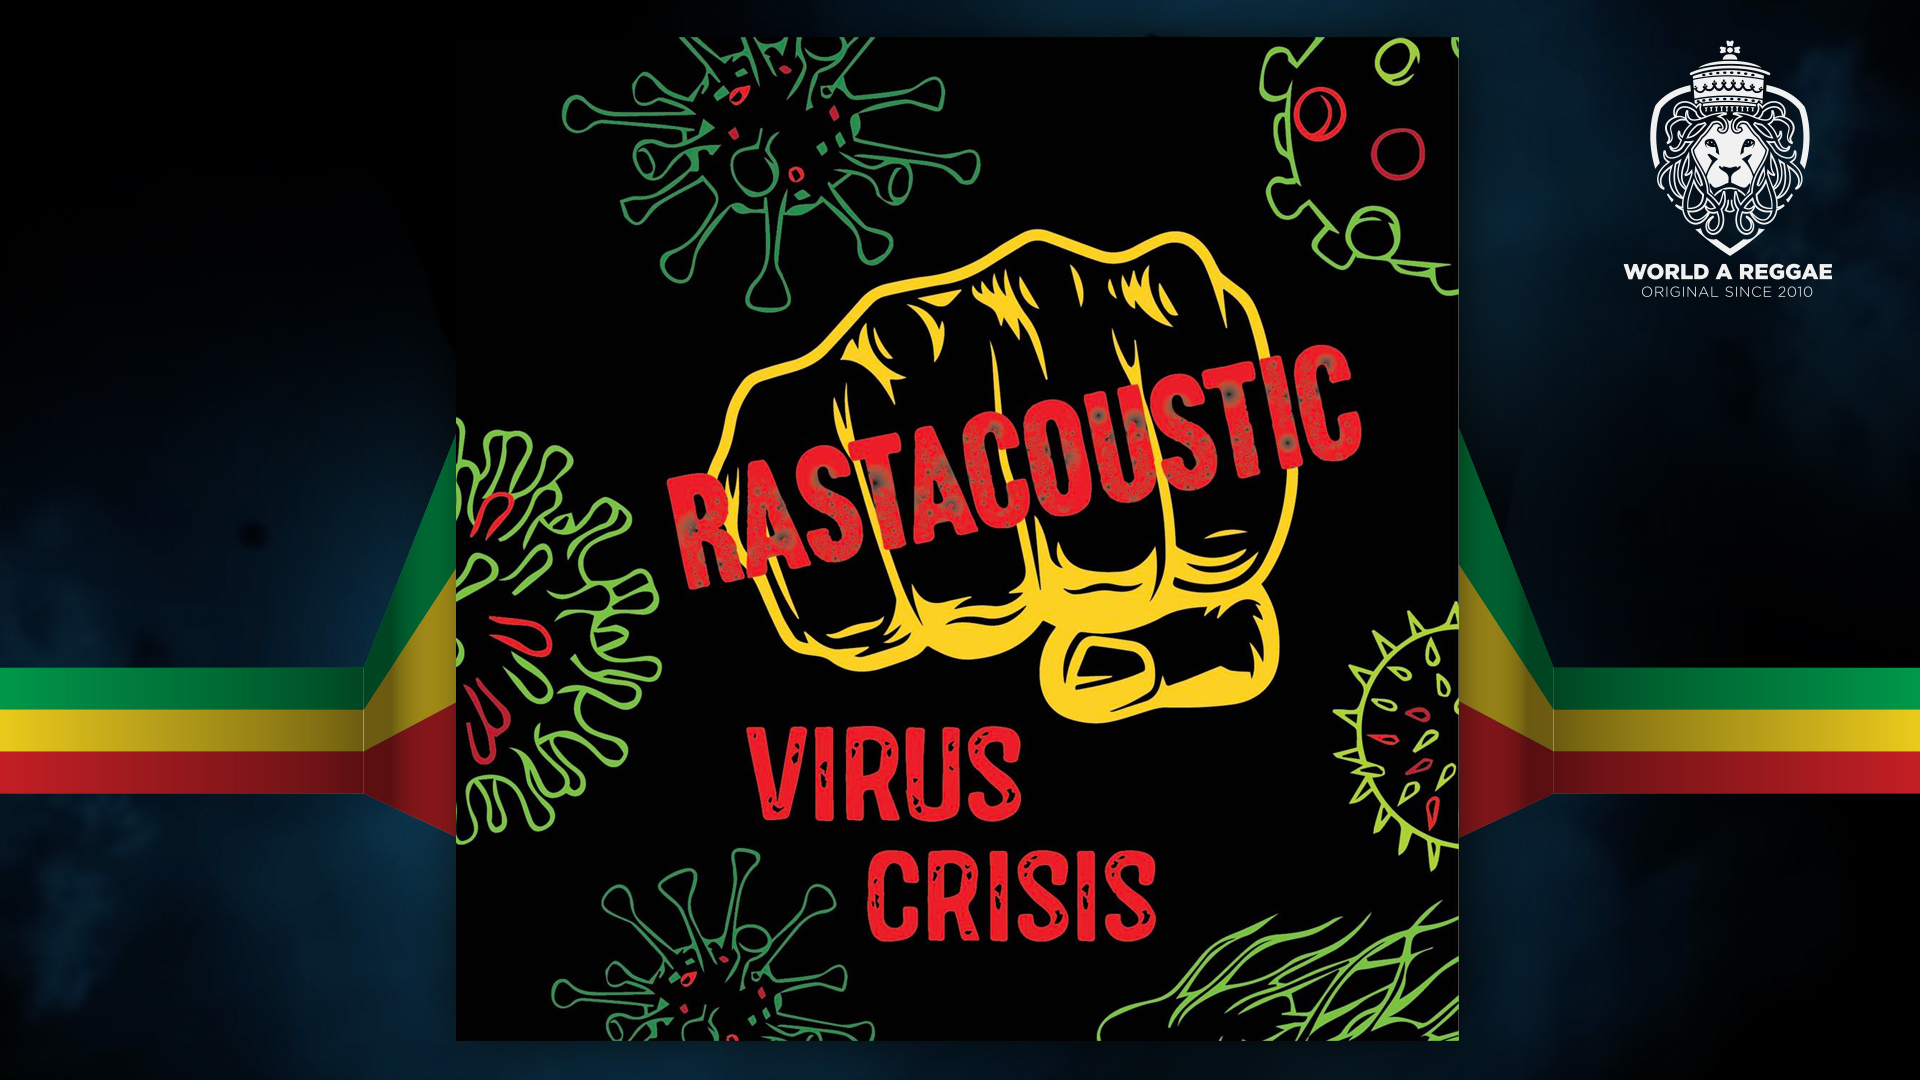 rastacoustic virus crisis